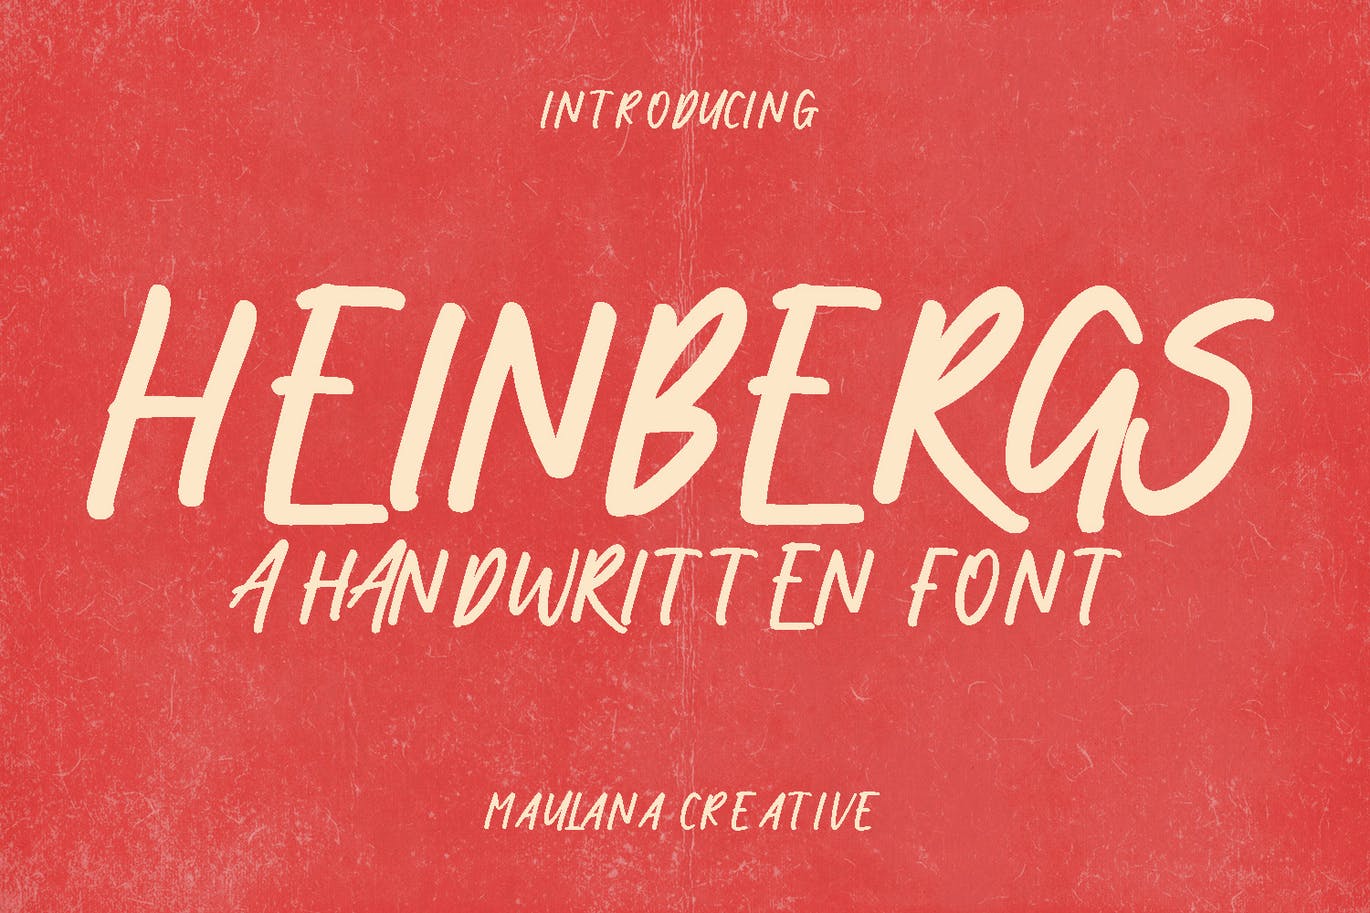 书籍标题手写显示字体素材 Heinbergs Handwritten Display Font 设计素材 第1张